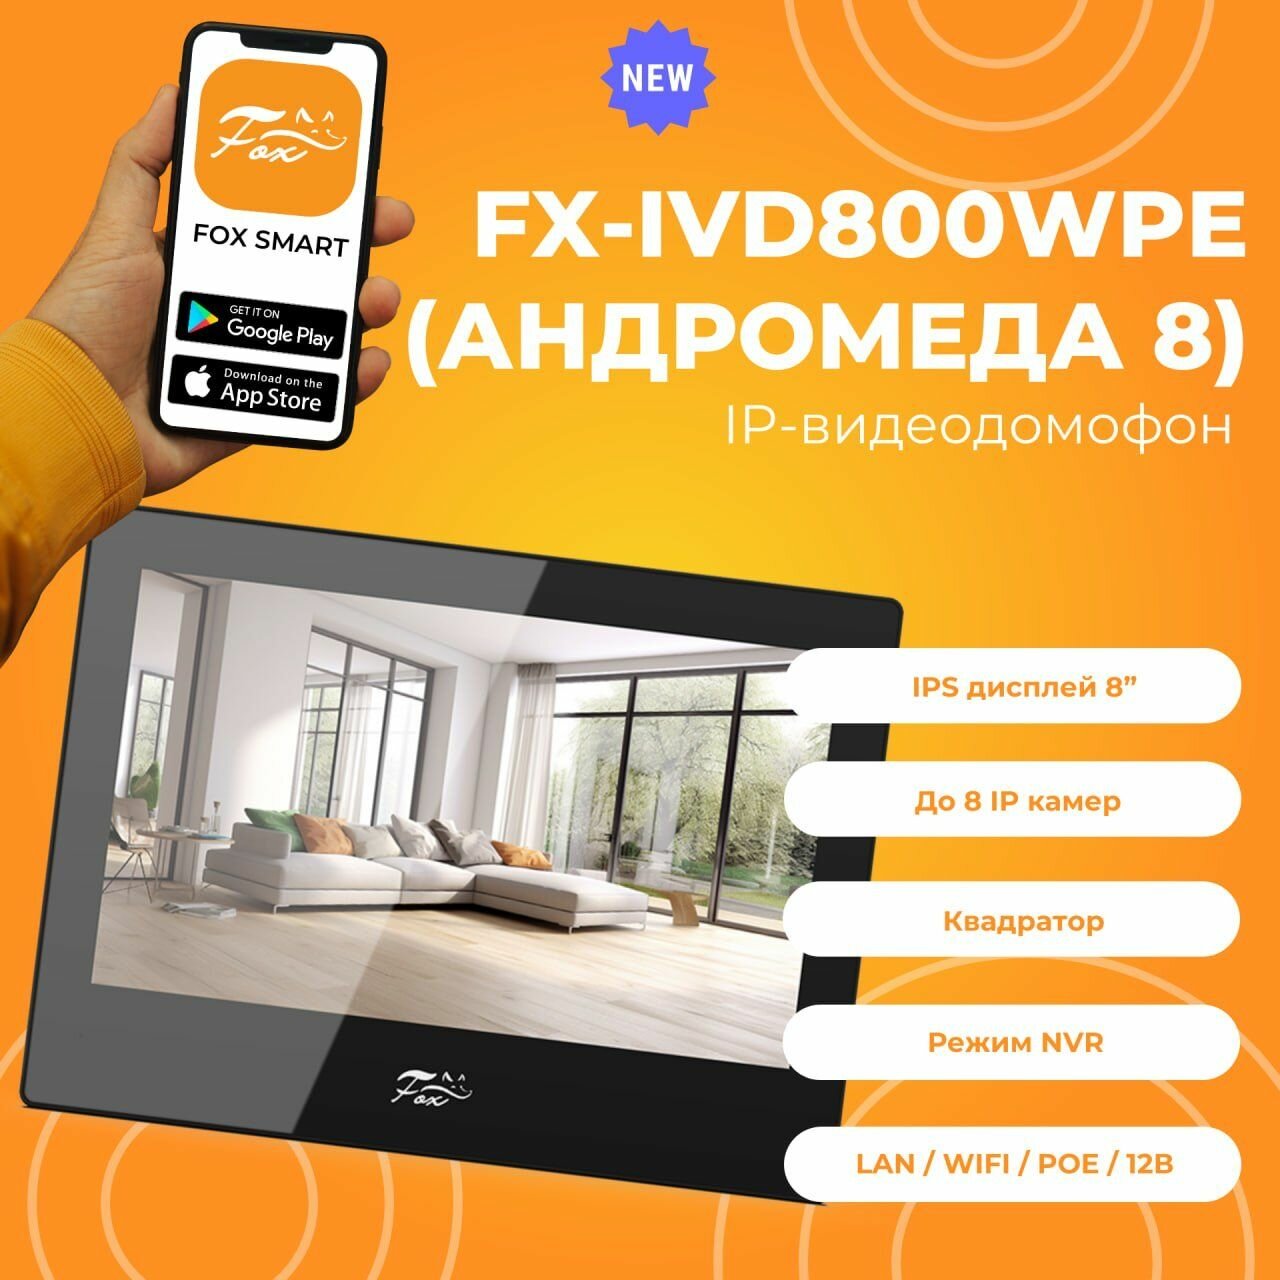 IP Wi-Fi Видеодомофон 8 дюймов Fox FX-IVD800WPE андромеда 8B